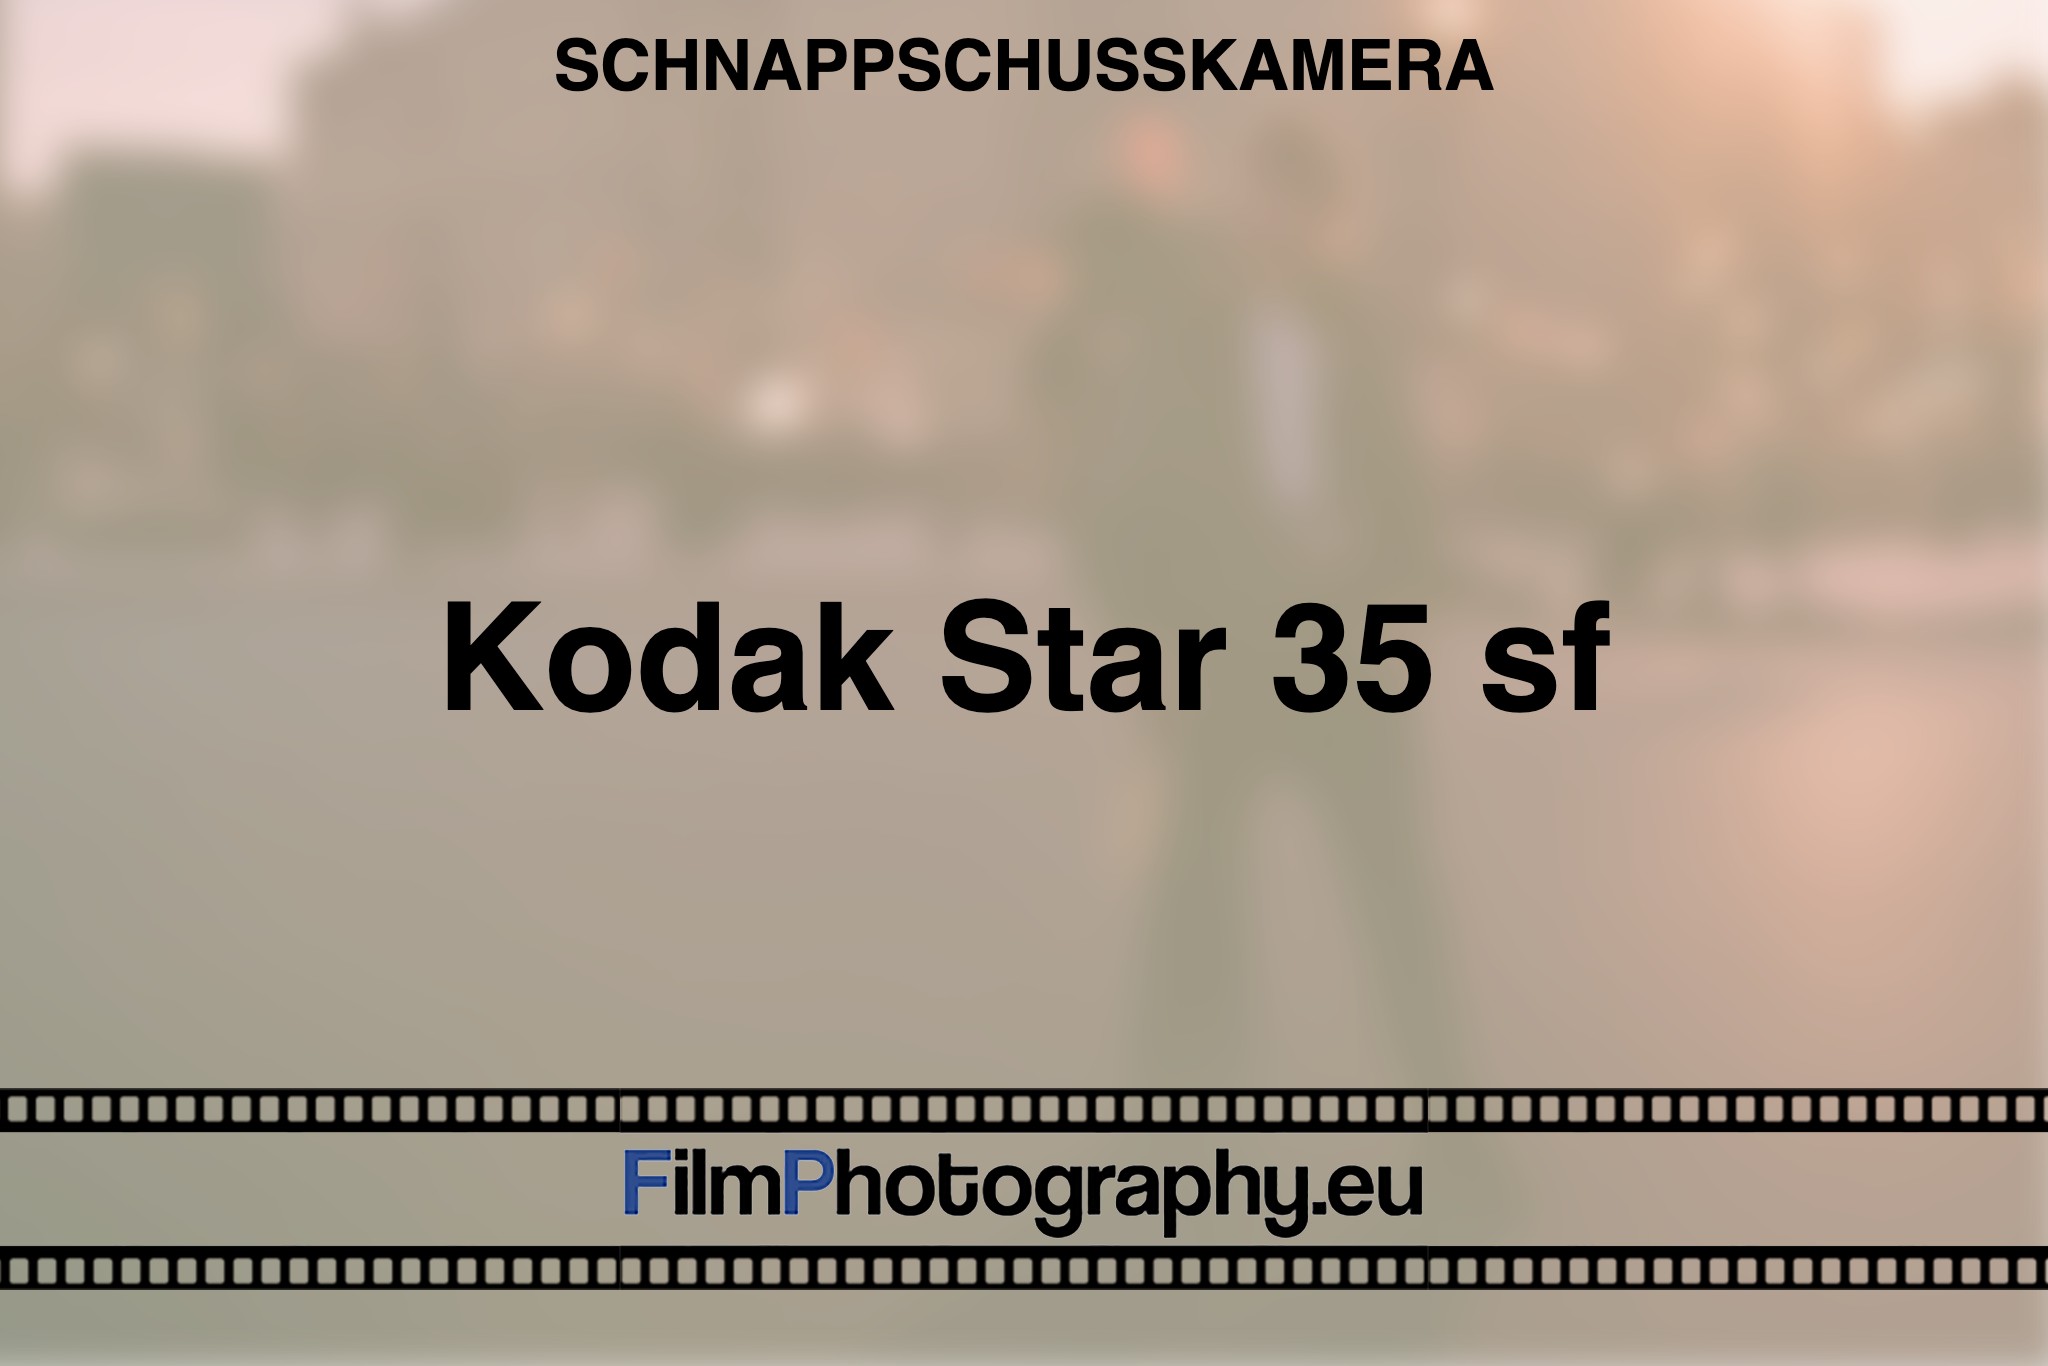 kodak-star-35-sf-schnappschusskamera-bnv